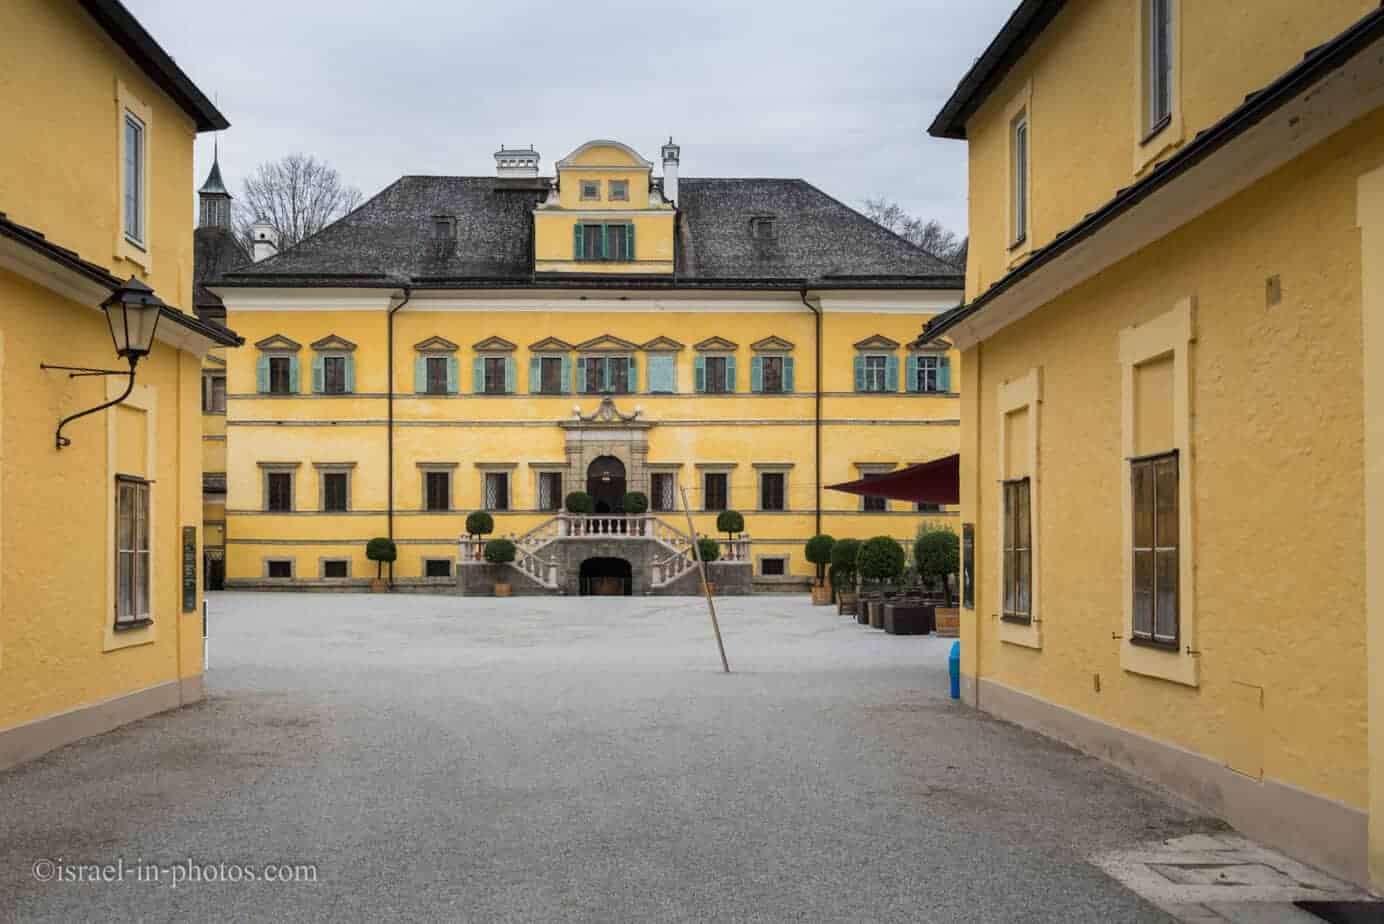 Посещение Schloss Хелльбрунн вблизи Зальцбурга, Австрия